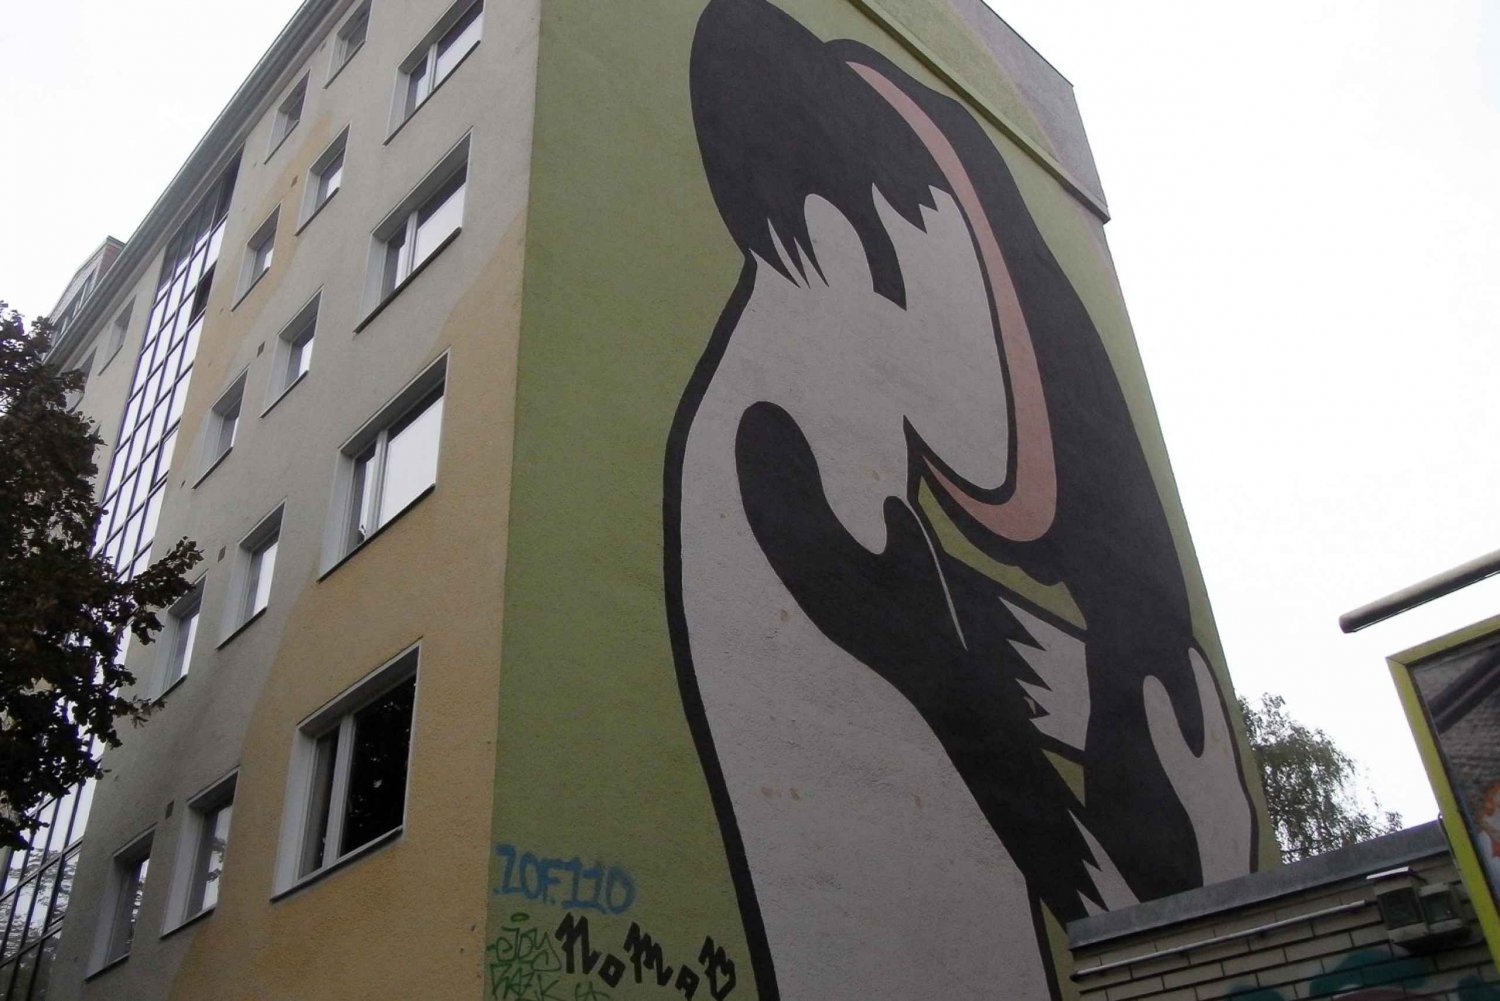 Excursão privada Berlim alternativa - murais, graffiti, agachamentos